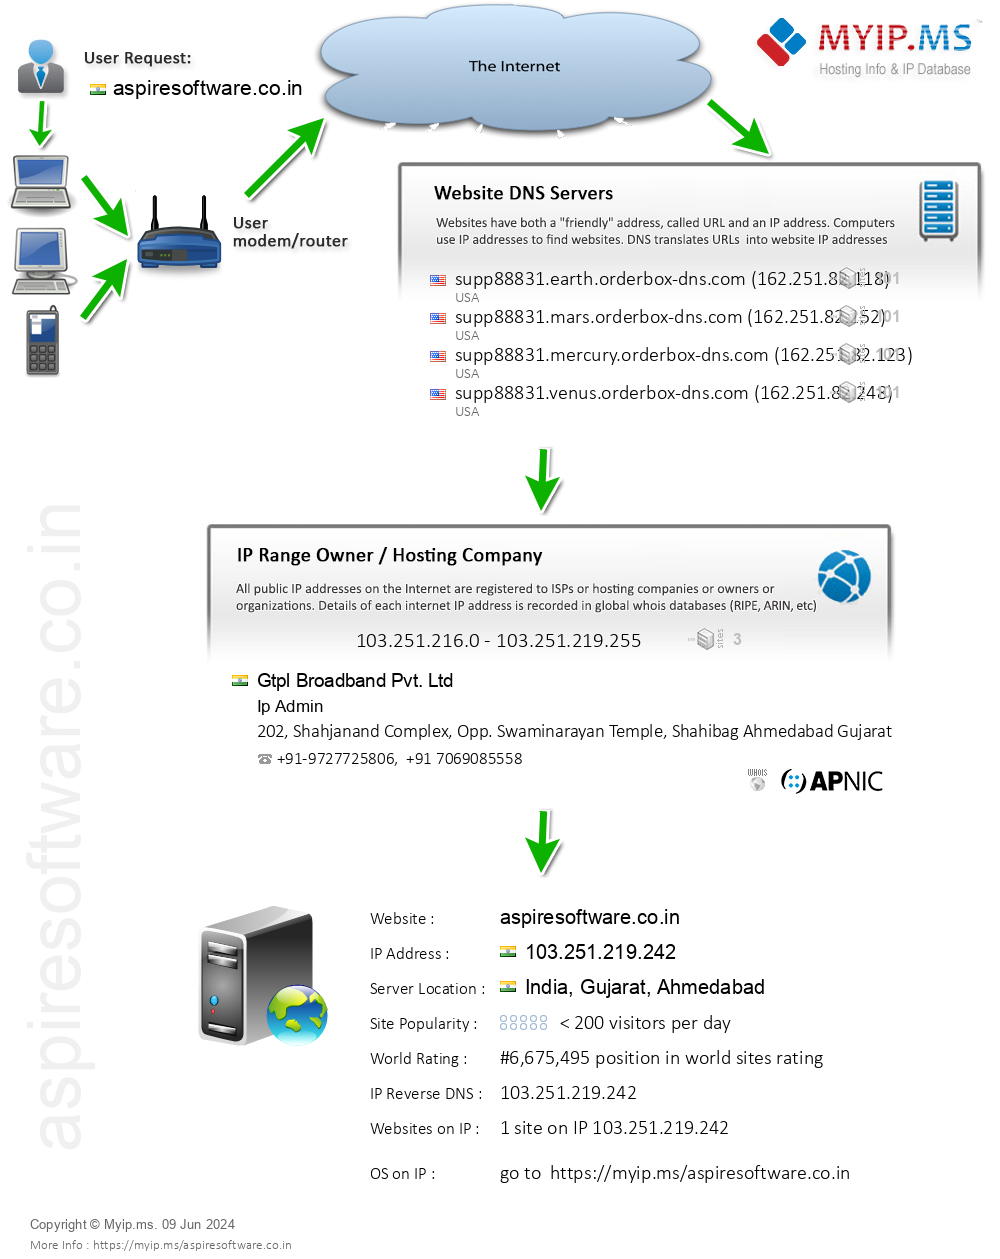 Aspiresoftware.co.in - Website Hosting Visual IP Diagram